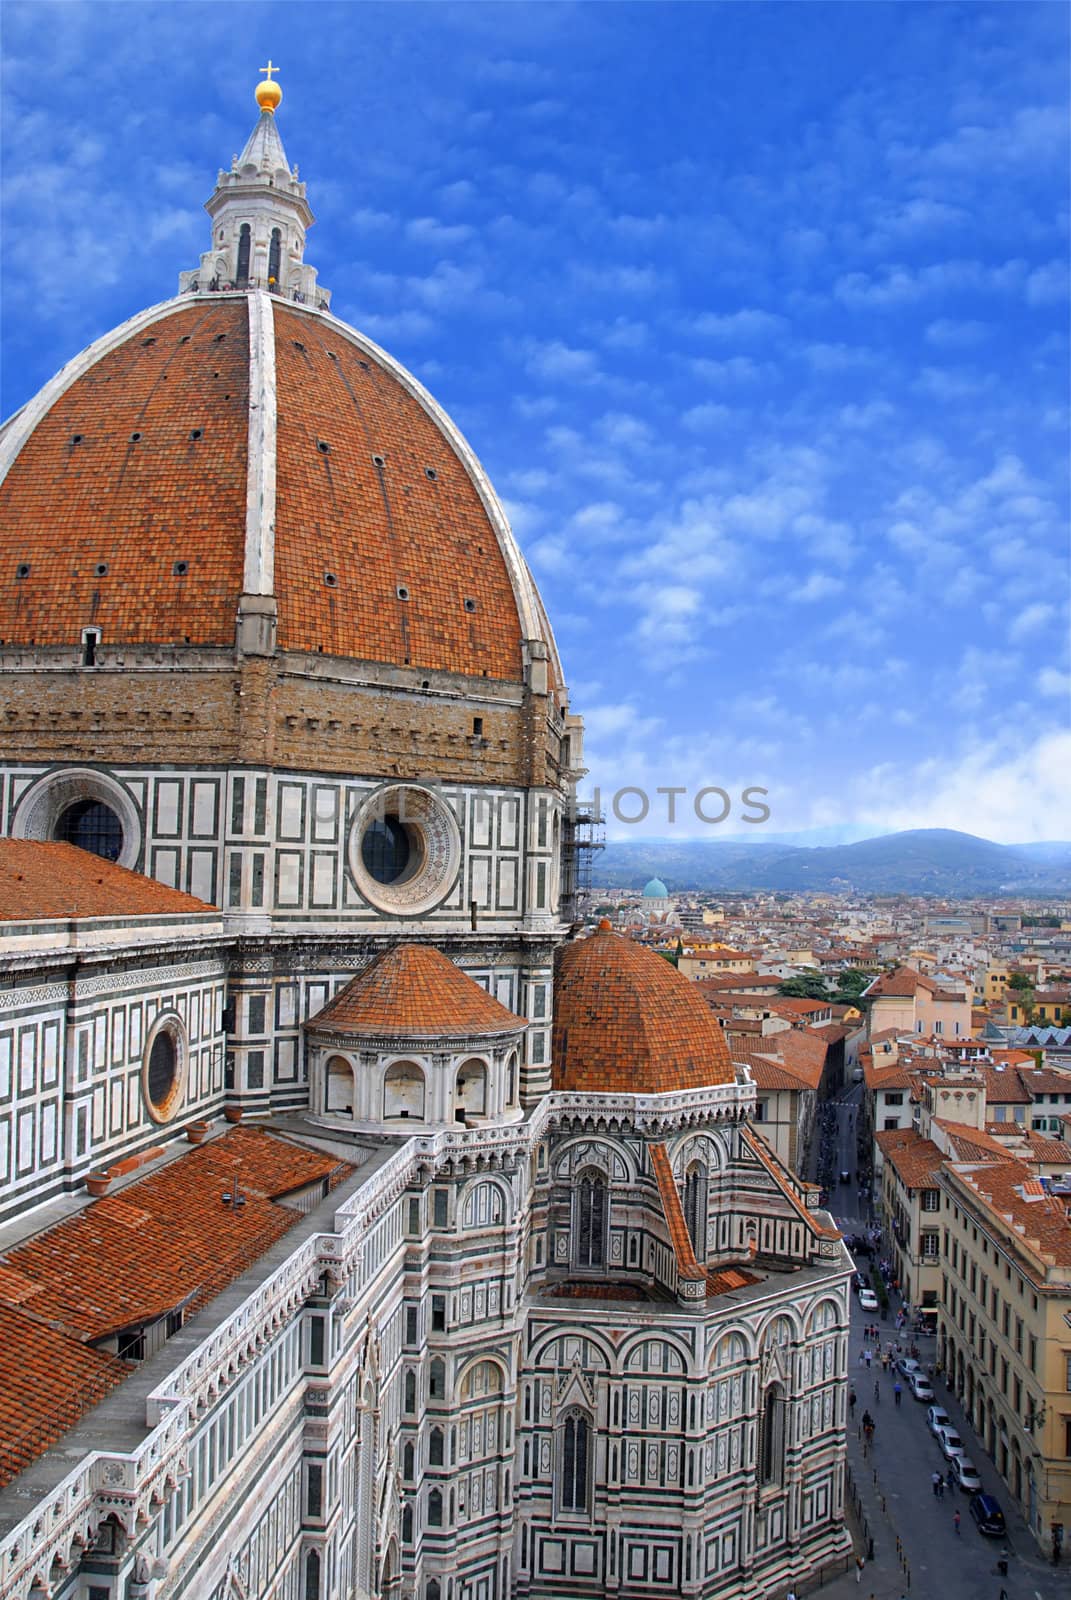 Santa Maria del Fiore in Florence by fyletto